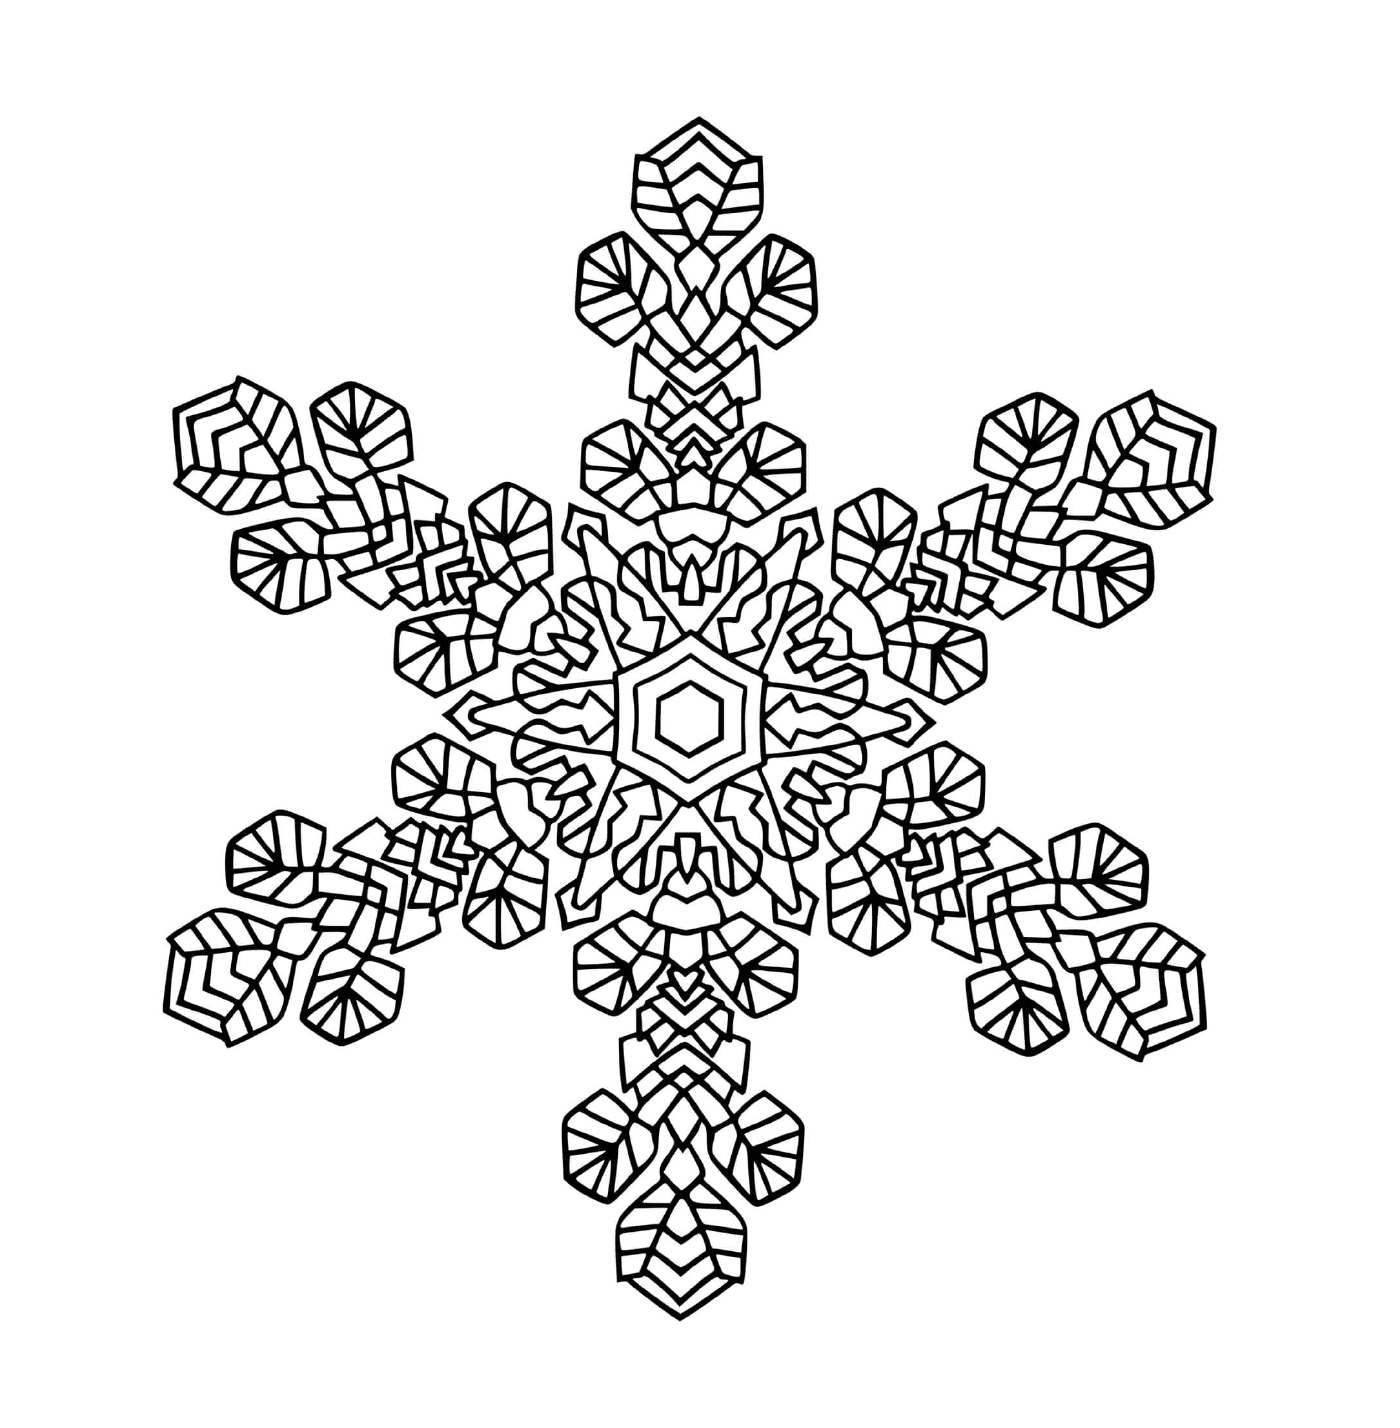  Um lindo floco de neve em mandala 